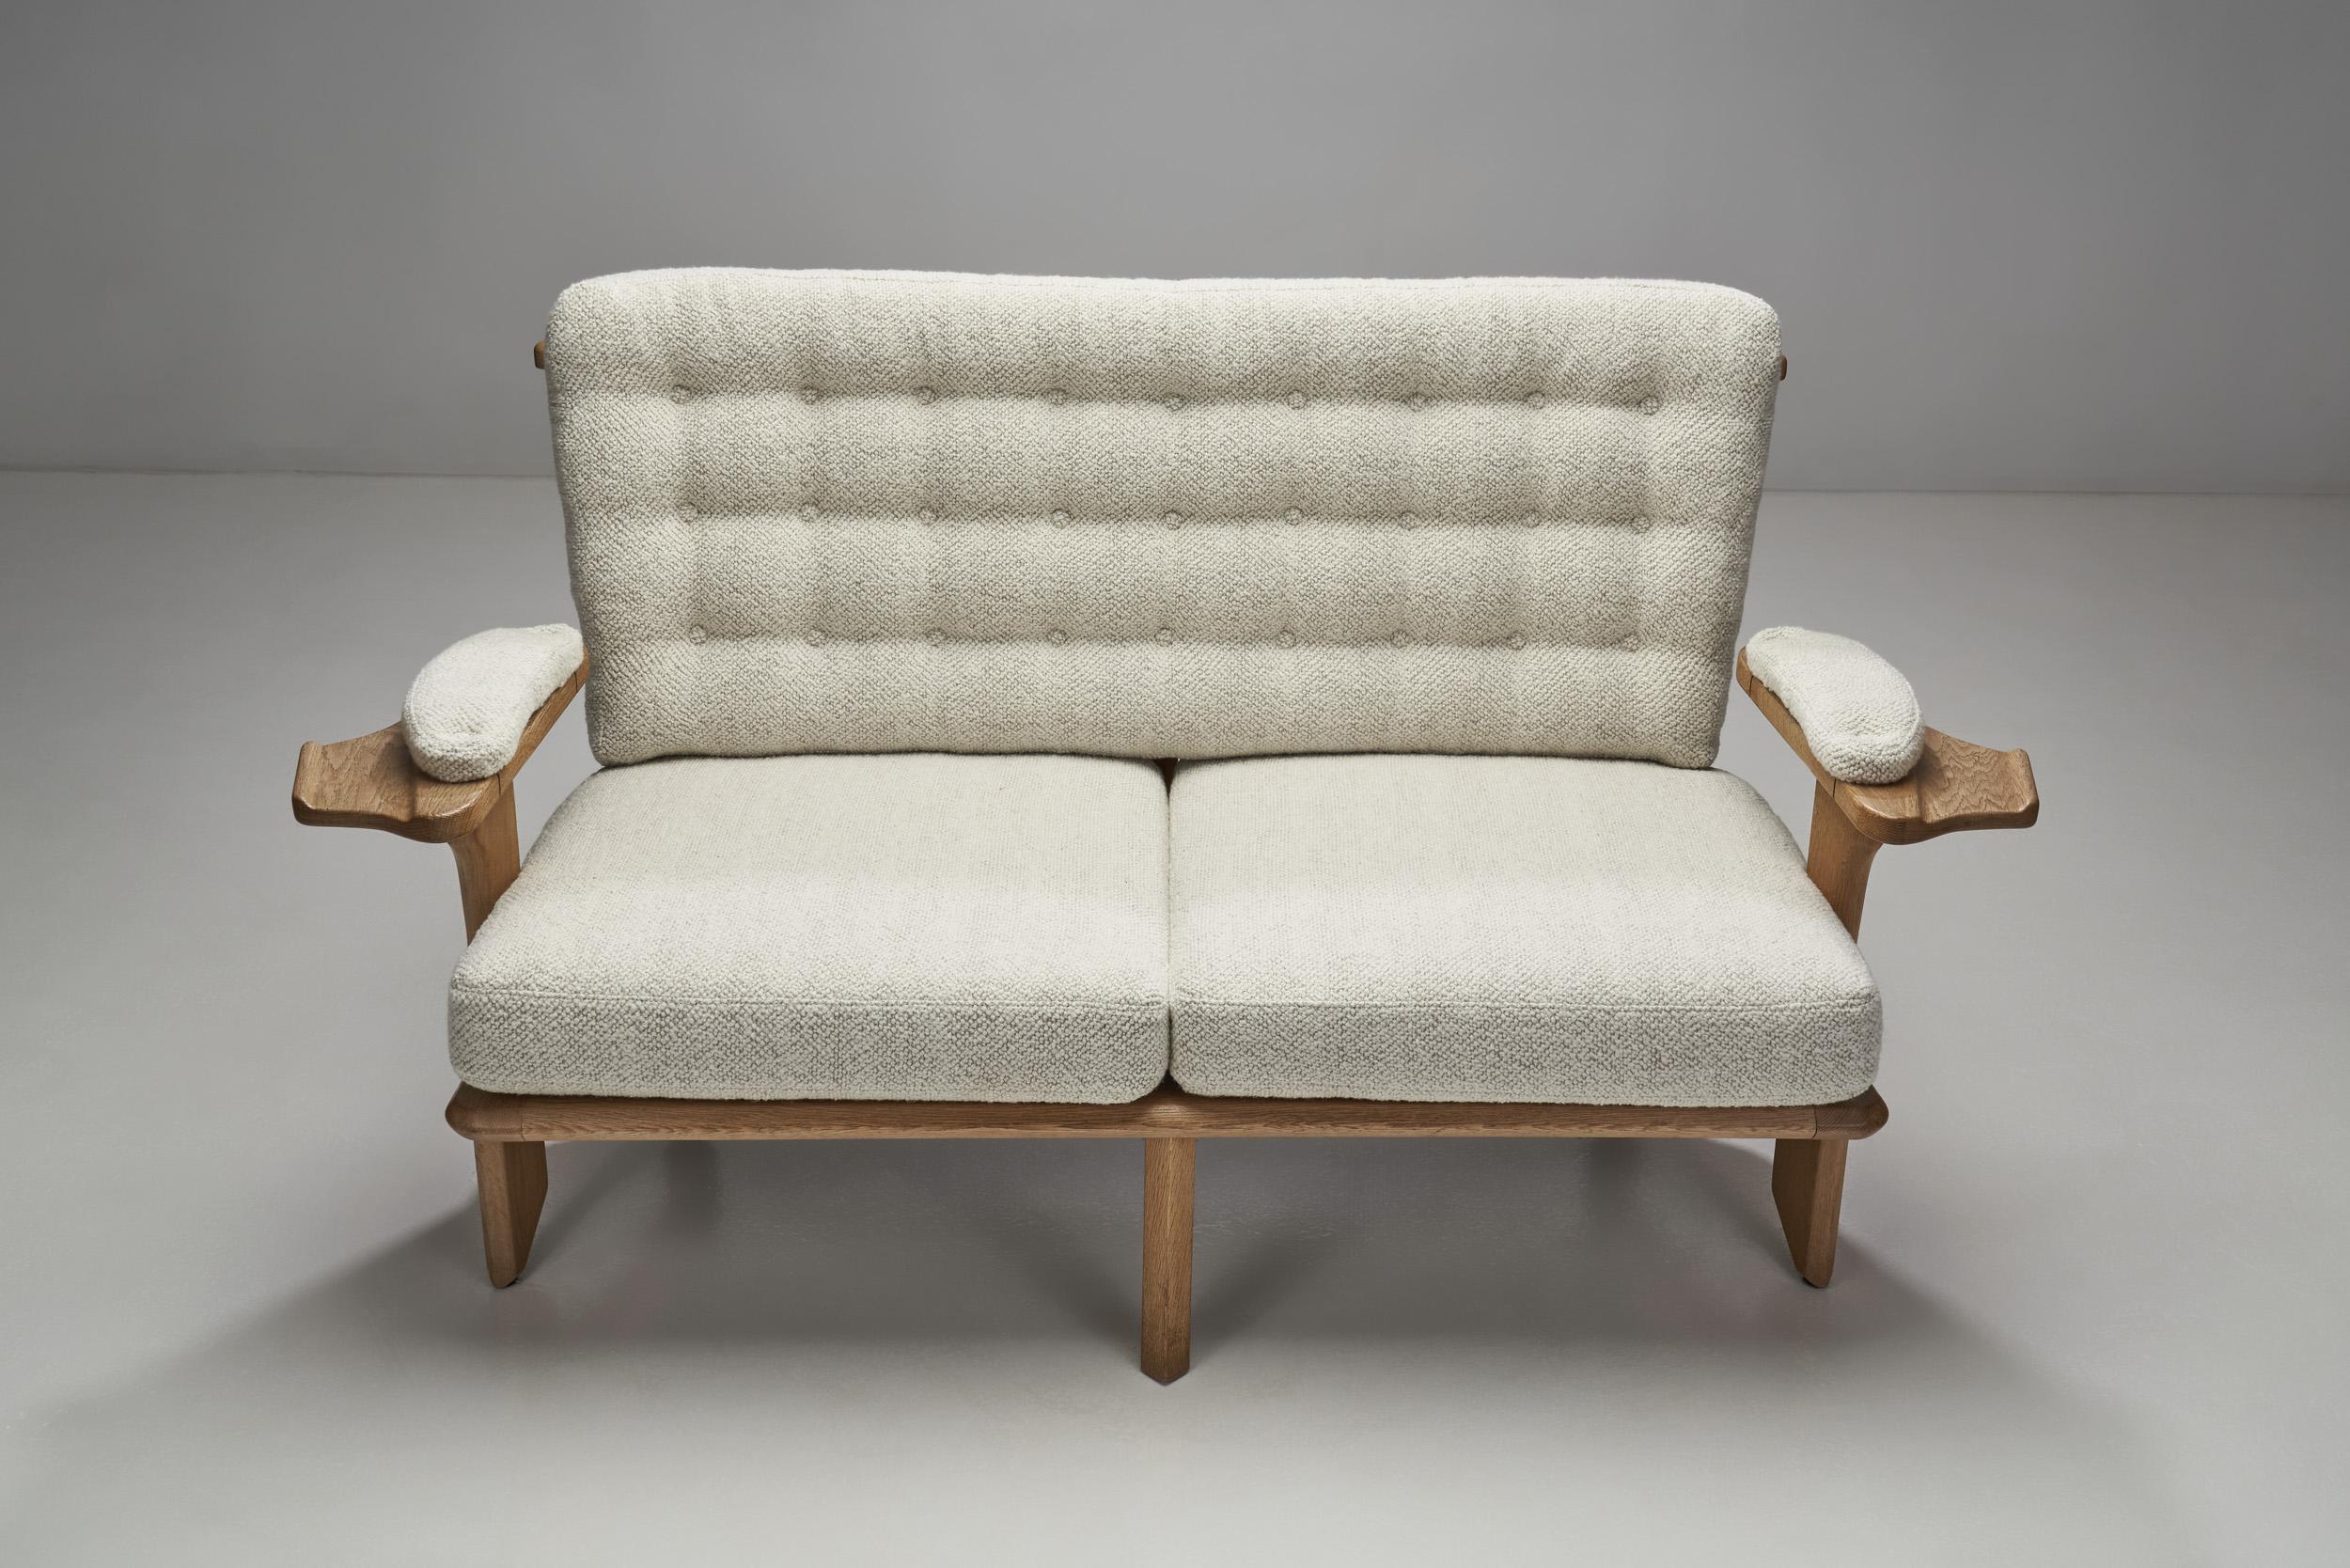 20th Century Guillerme et Chambron Sculpted Oak Two-Seater Sofa for Votre Maison, France 1960 For Sale